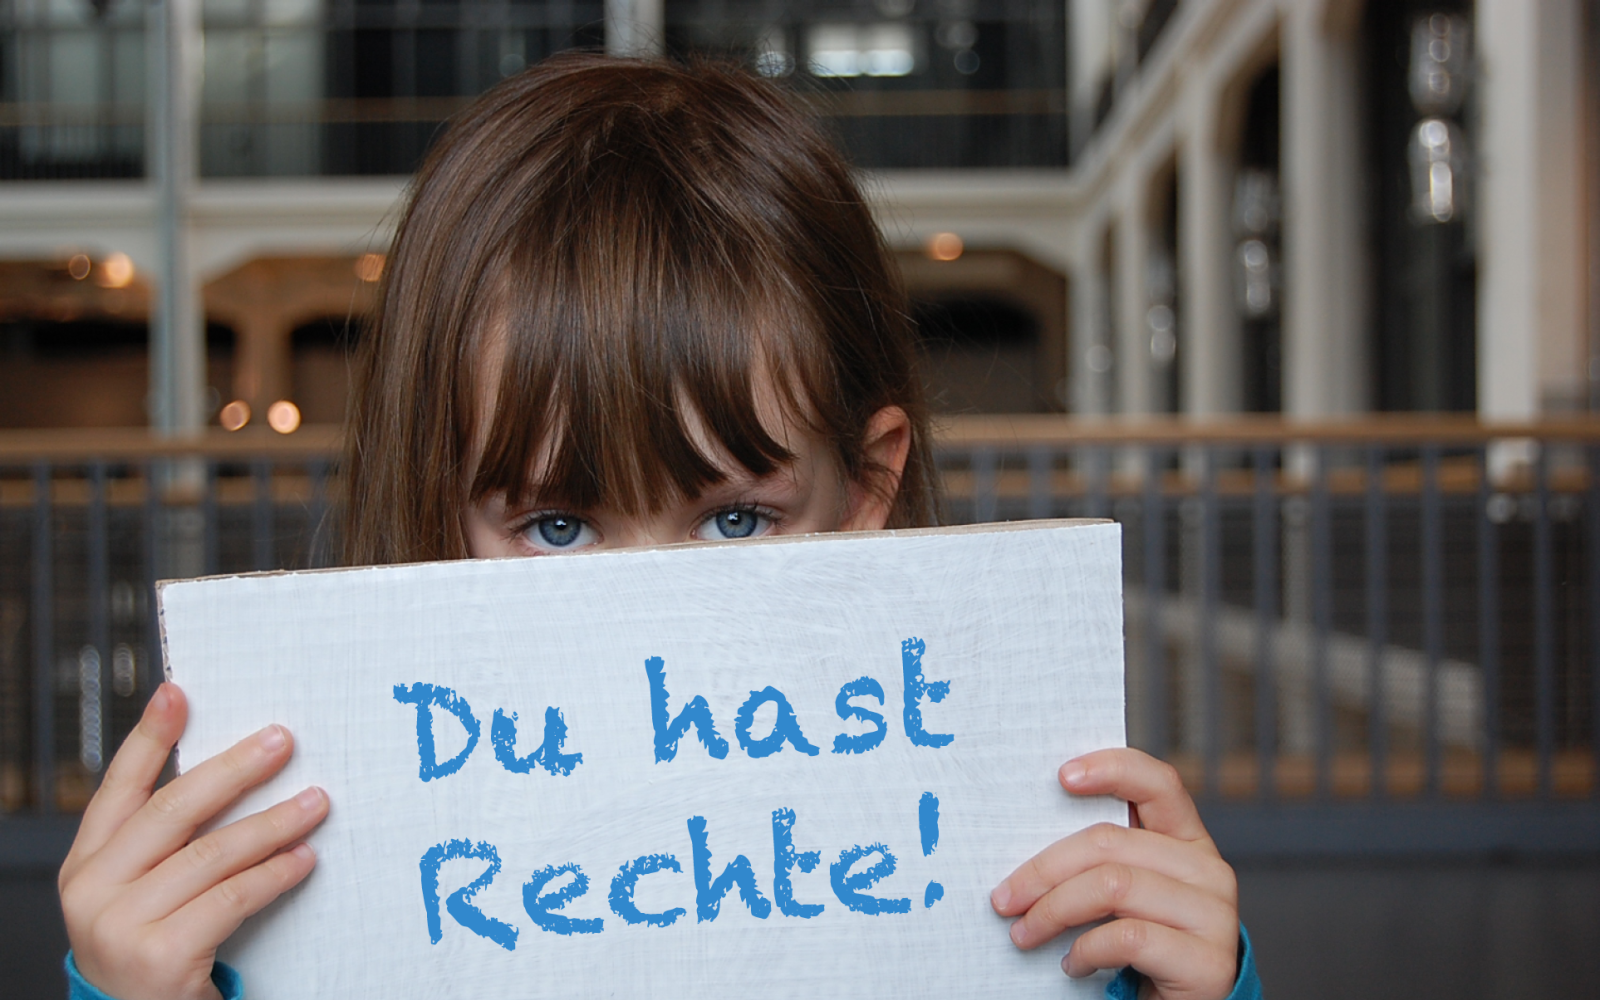 Ein kleines Mädchen hält ein Schild vor ihrem Gesicht, auf dem steht "Du hast Rechte!"